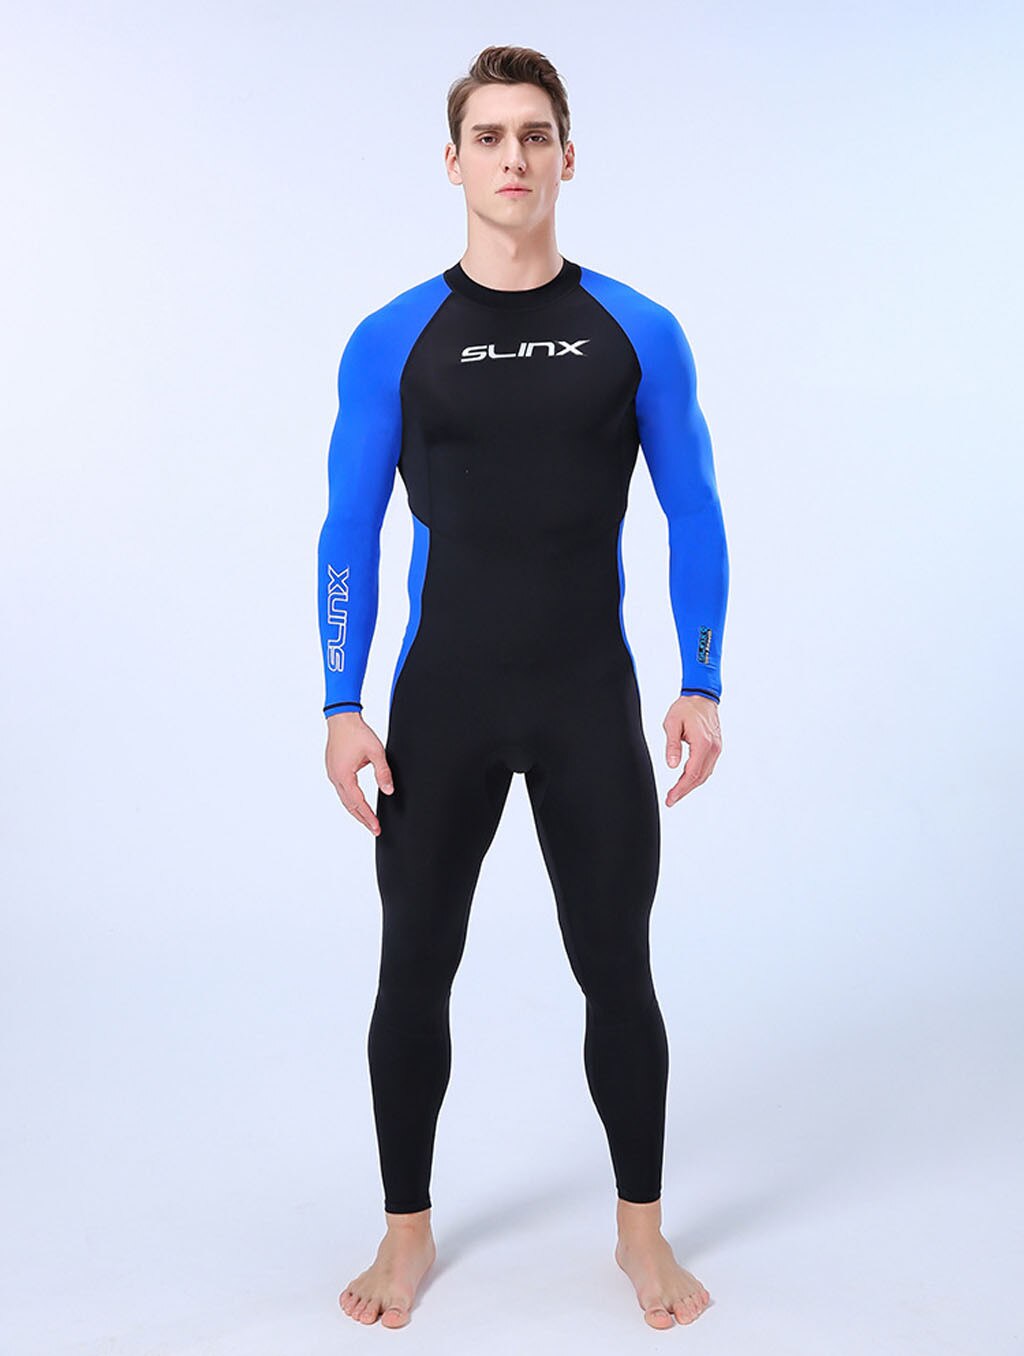 Männer Tauchen Anzug Neoprenanzug Full Body Langarm Badeanzug Surfen TauchanzugA 